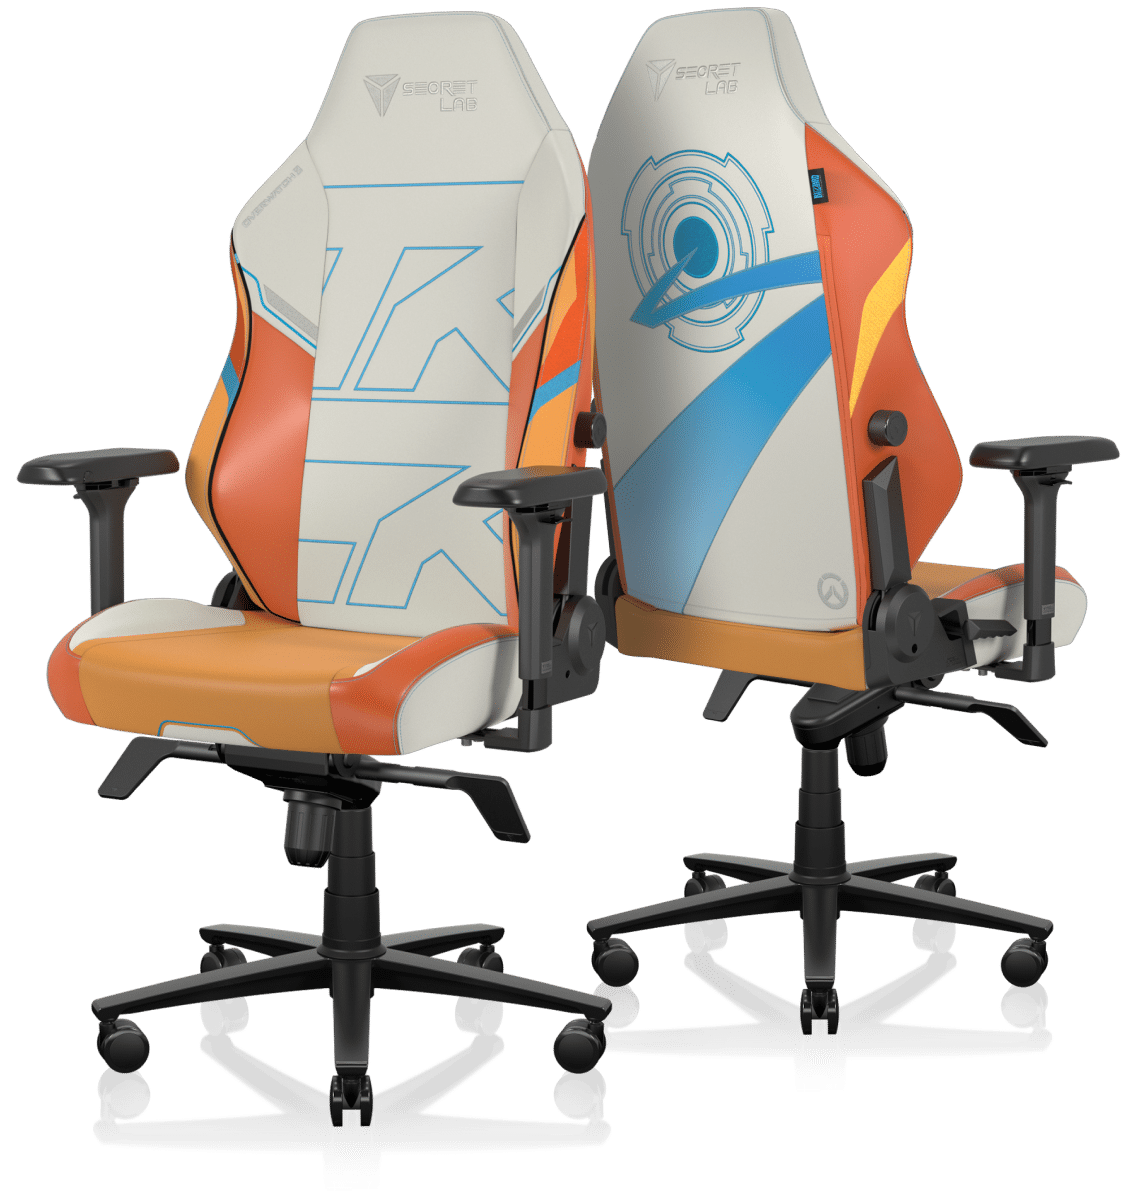 Secretlab Classics gaming chairs